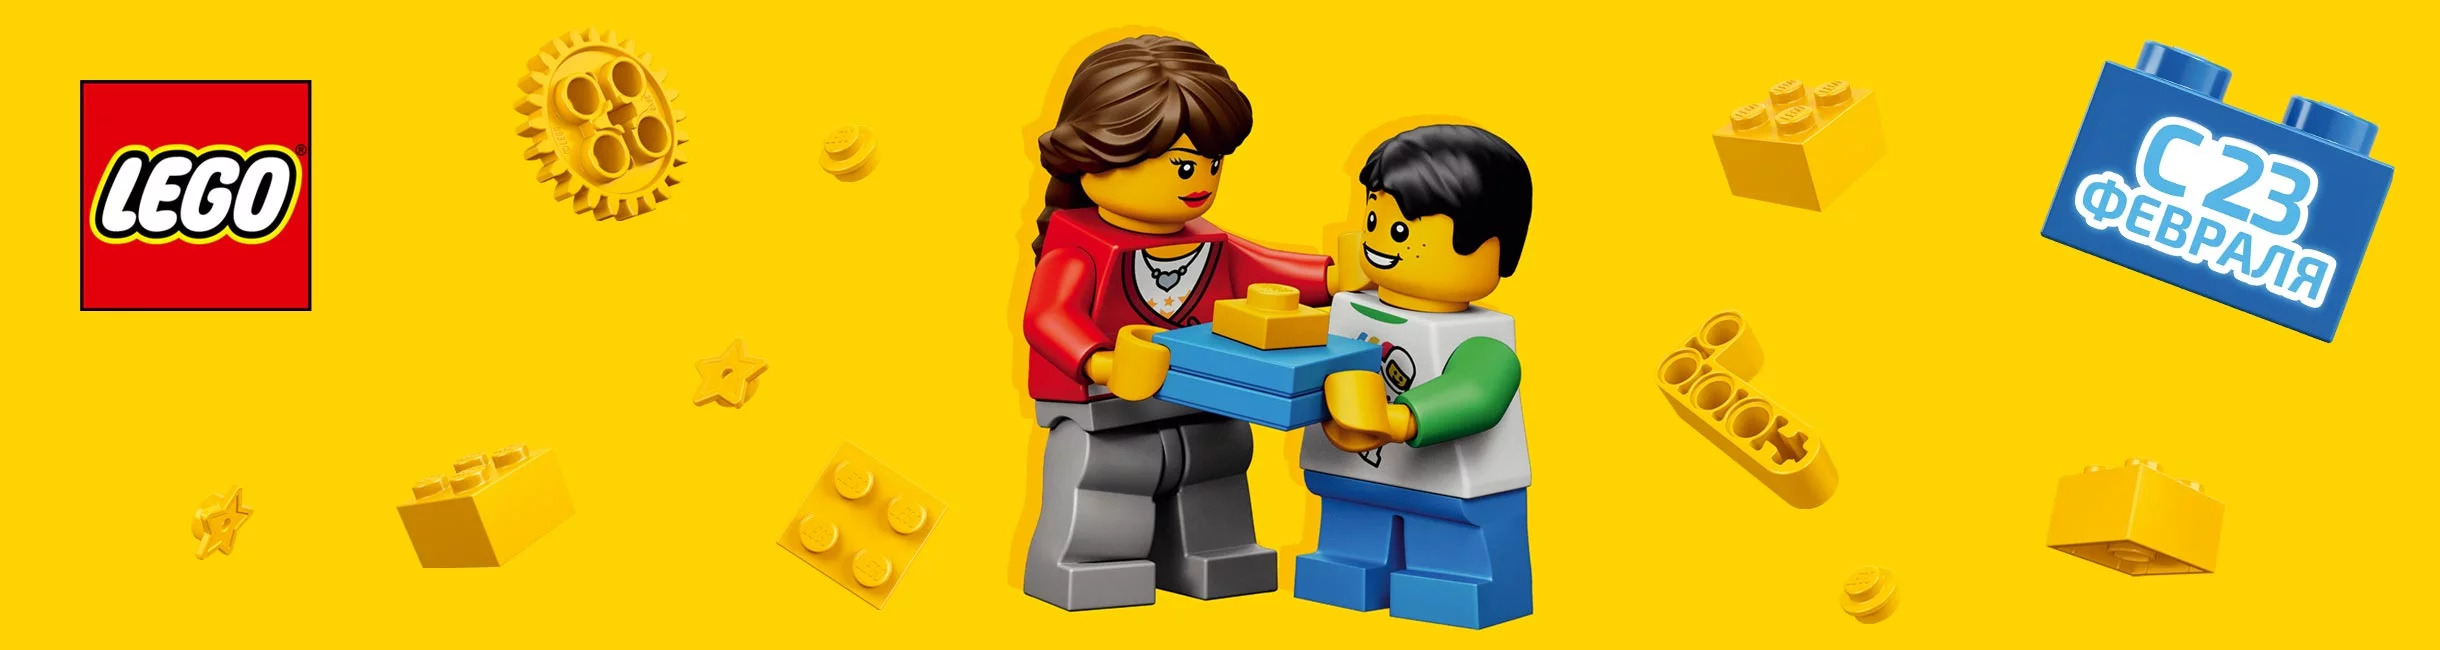 Рекламная акция Лего (LEGO) «Время героев настало!»